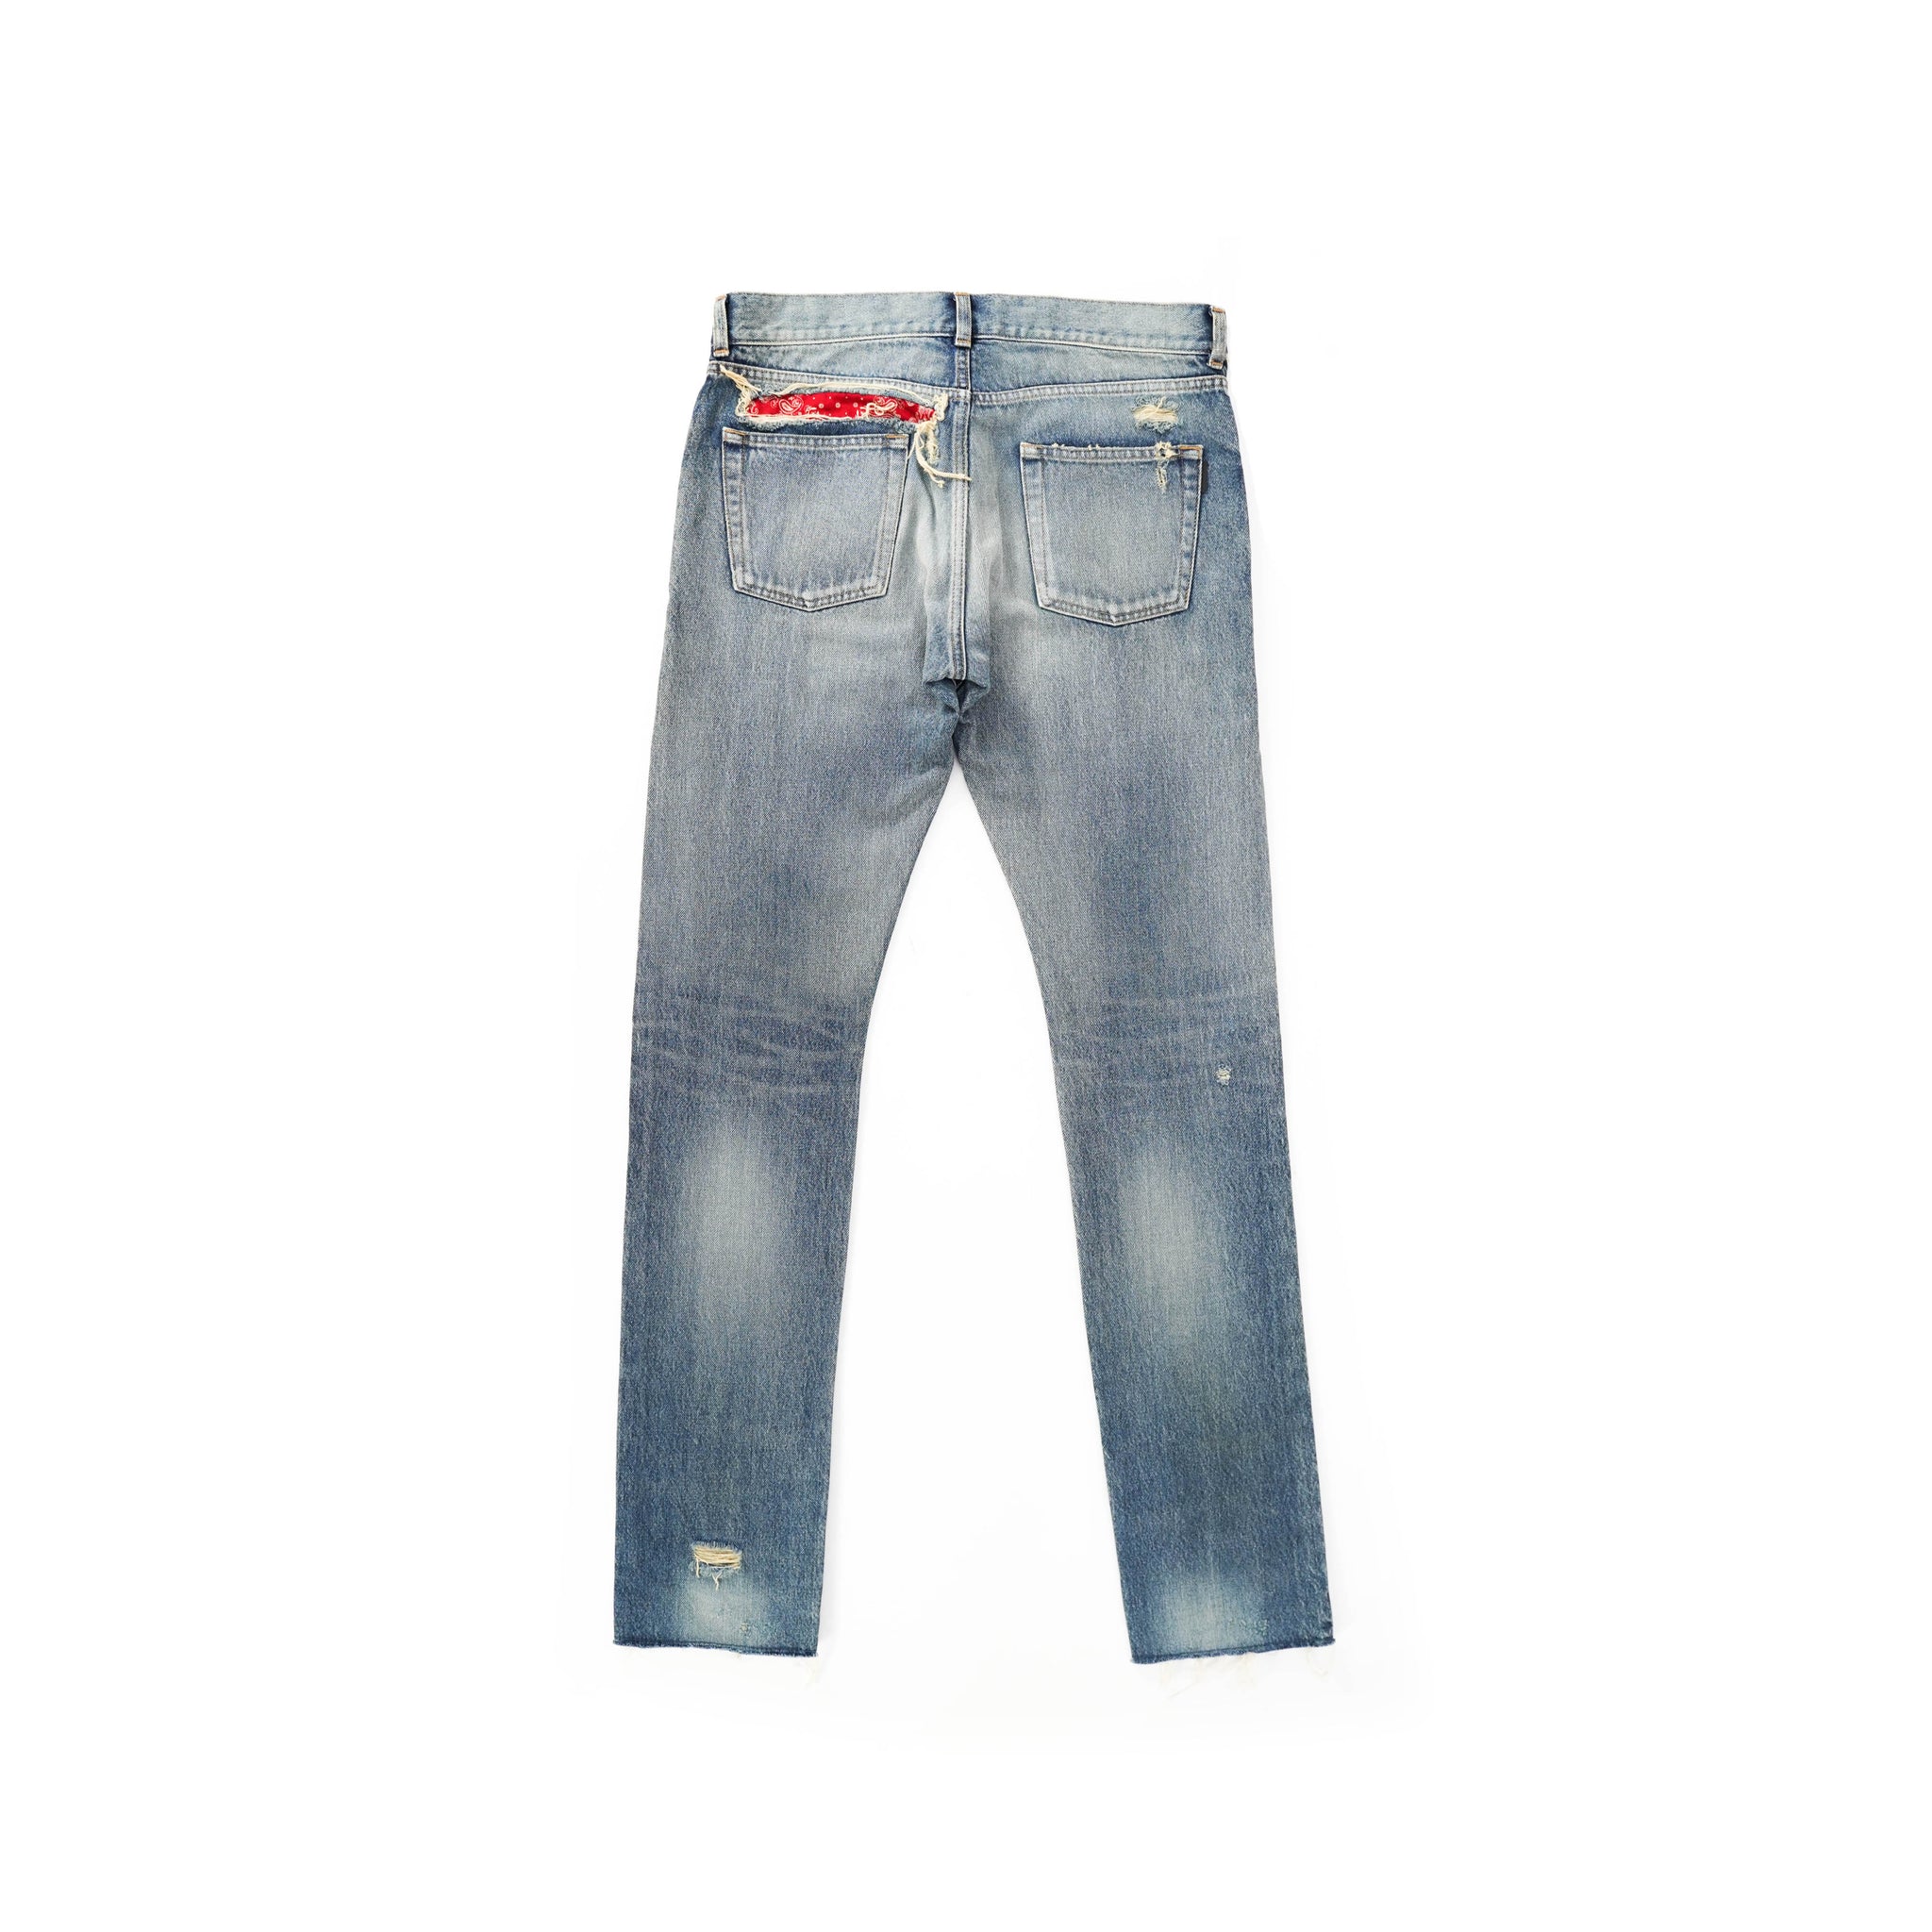 Bandana Backyardarchive Distressed Jeans –